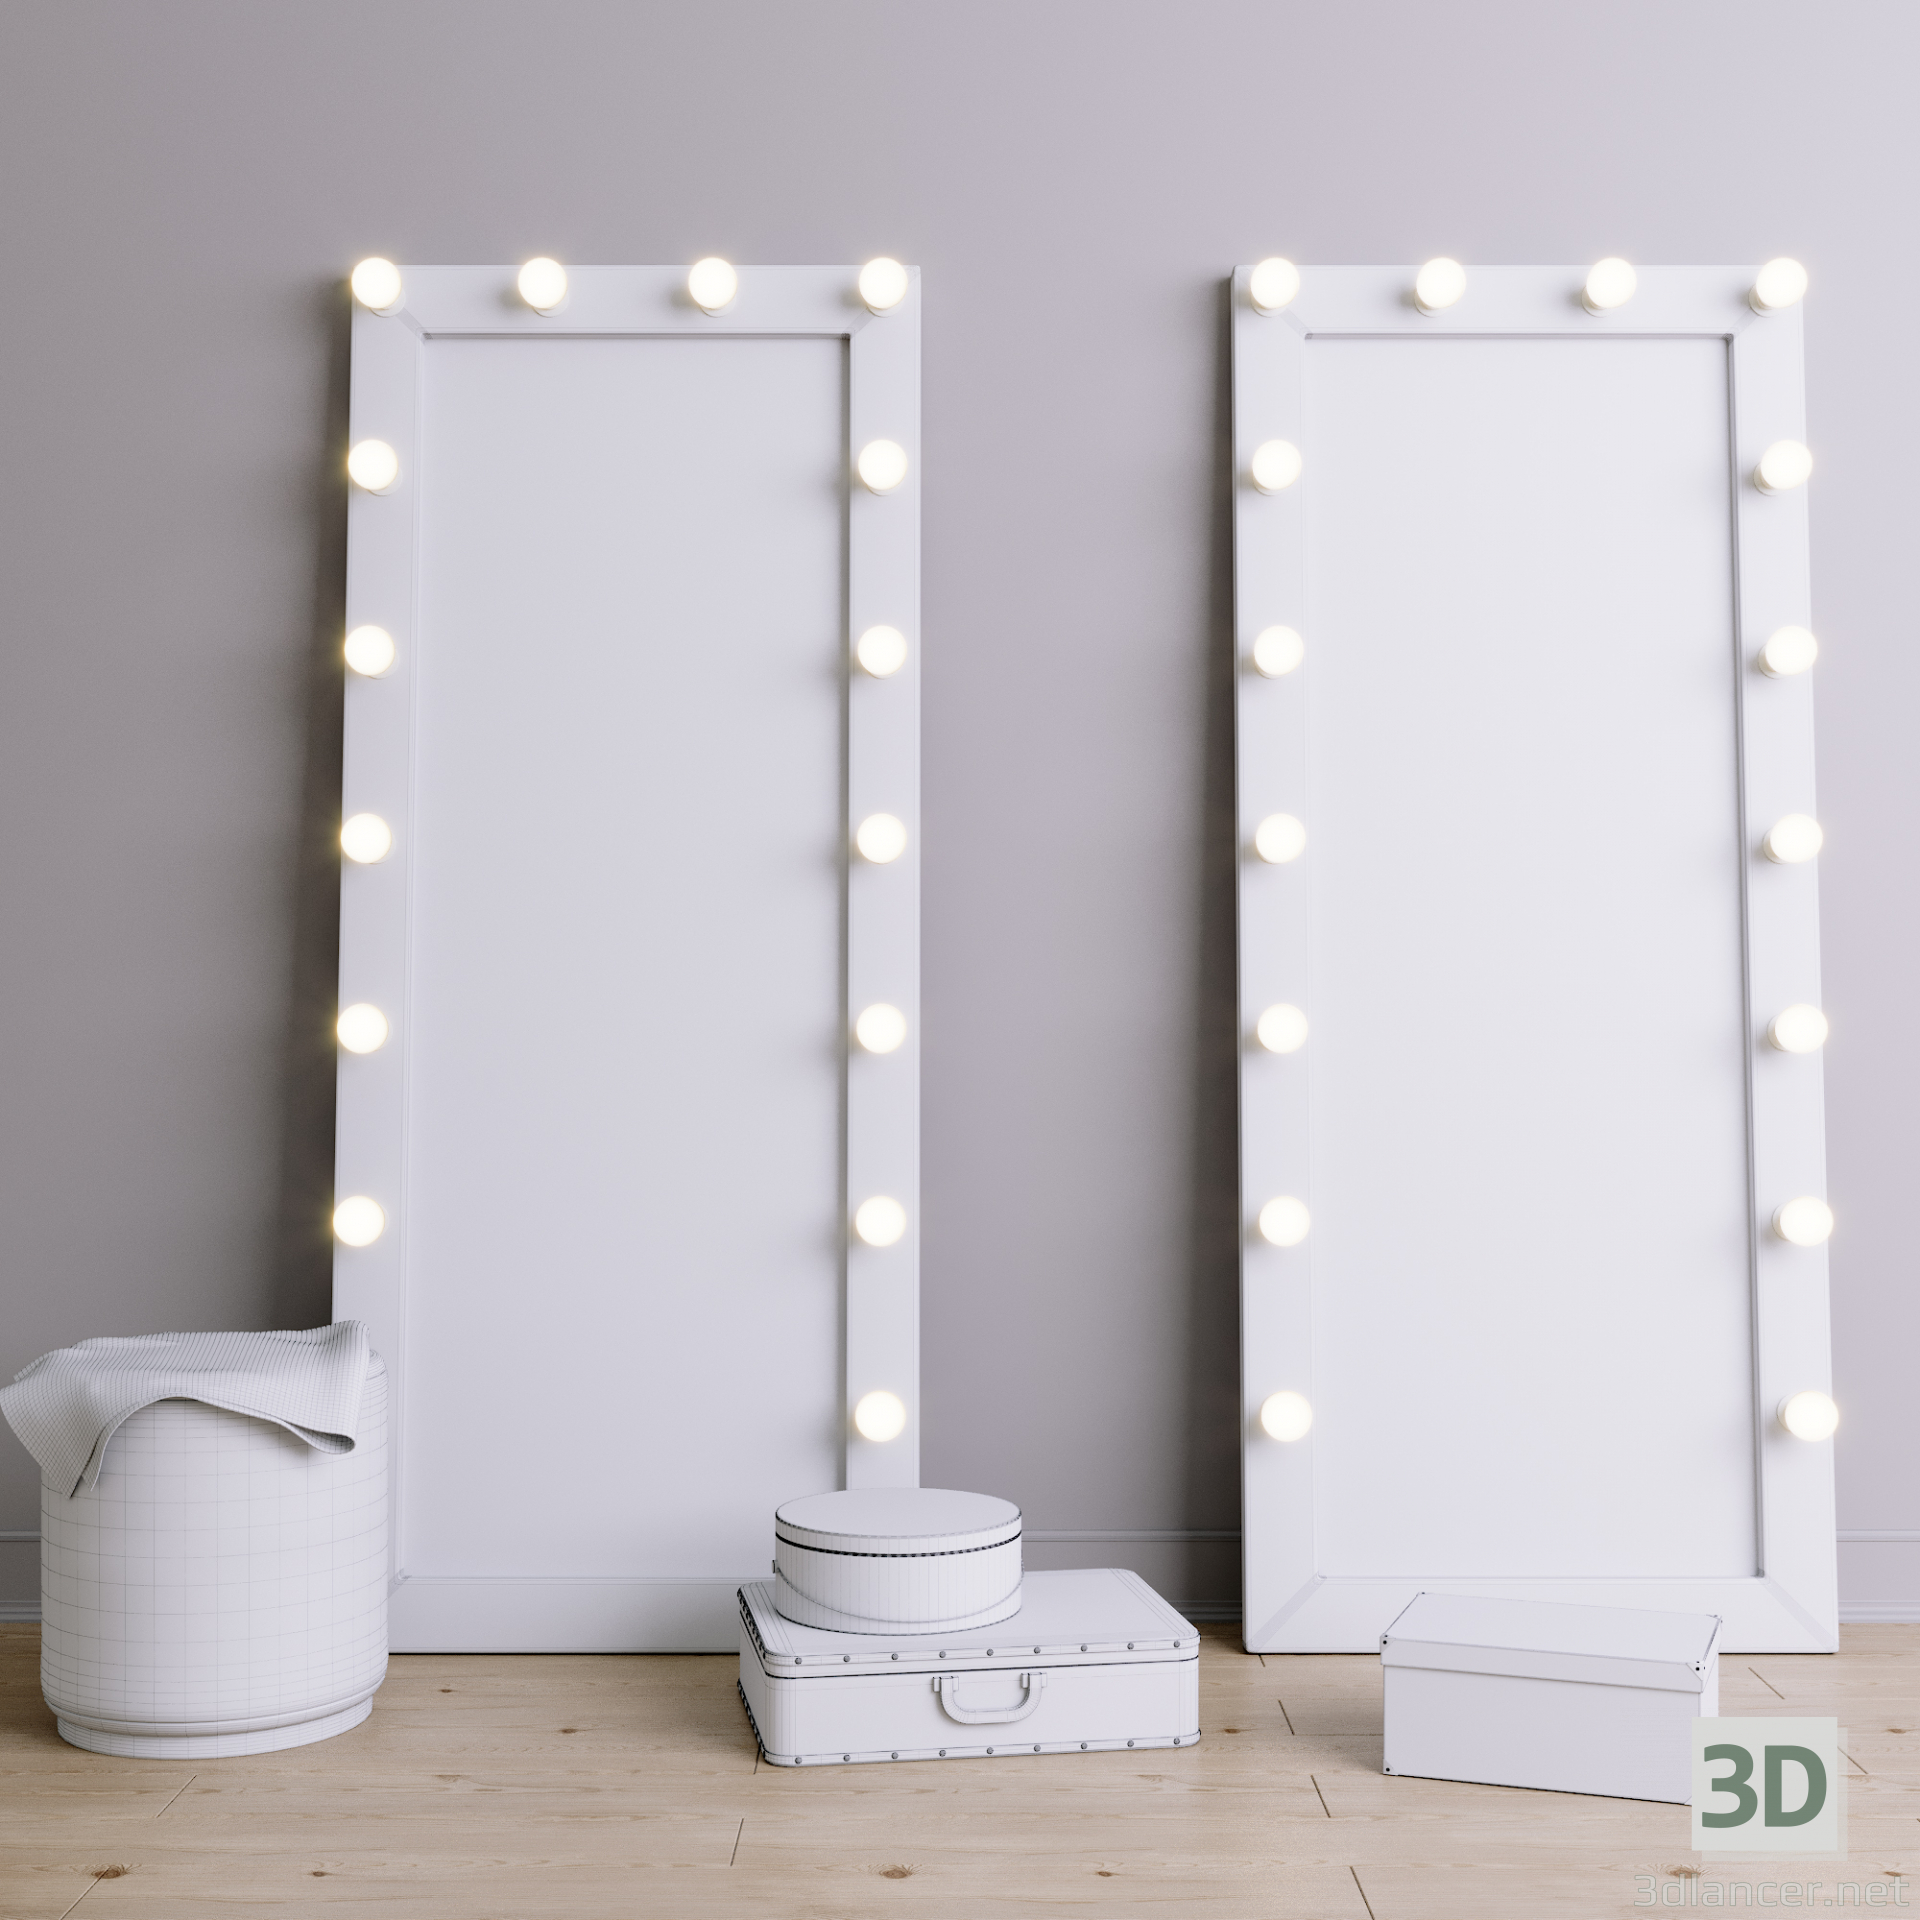 3d Floor make-up mirror model buy - render